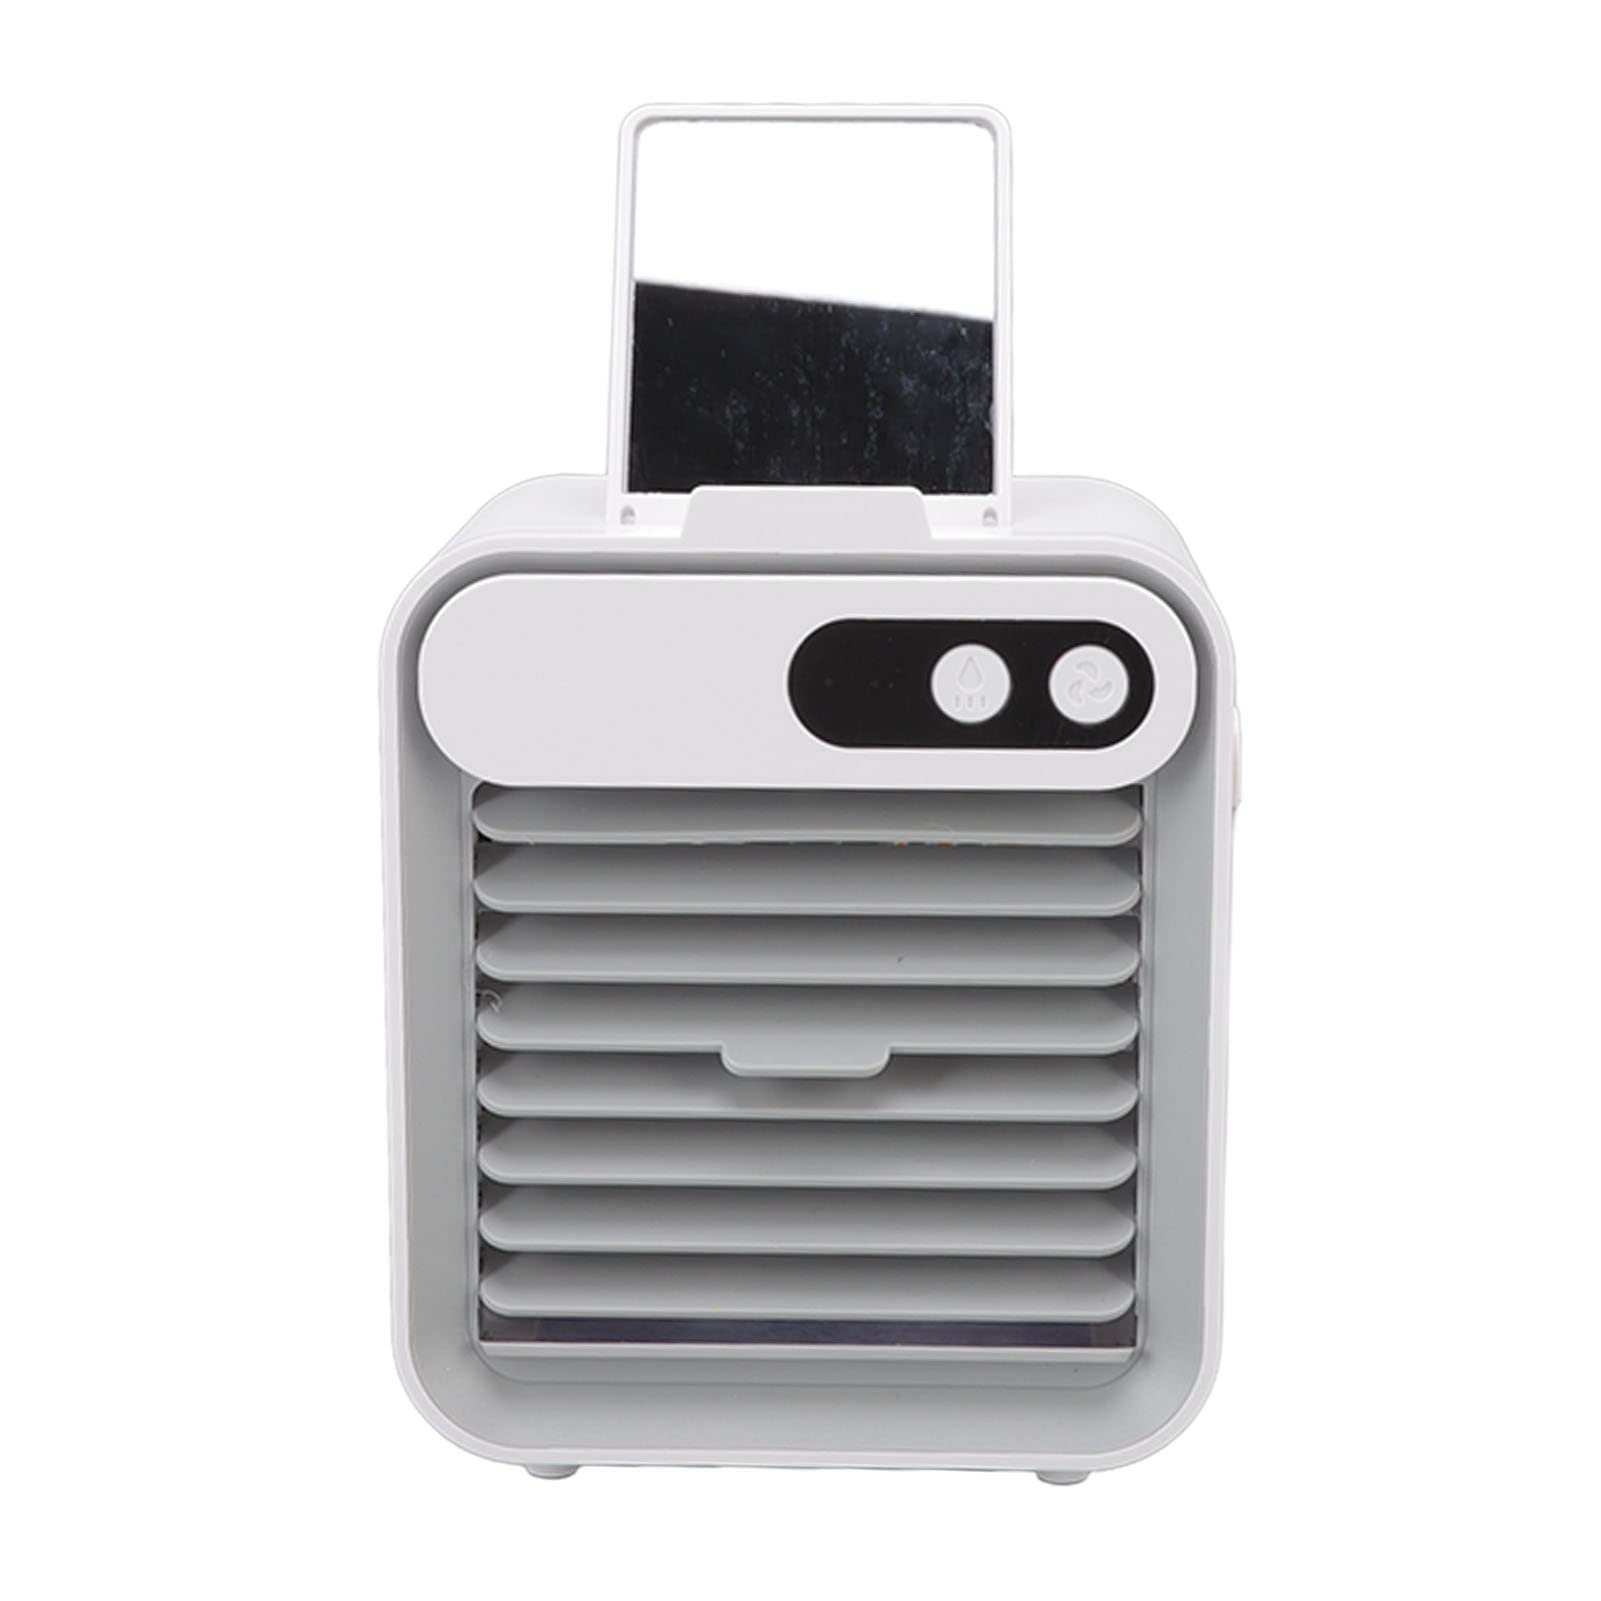 FRZY Mini-Klimaanlage, multifunktionale USB-Klimaanlage mit ABS-Lederbatterie 3 Gänge für Schlafzimmer (Weiß)